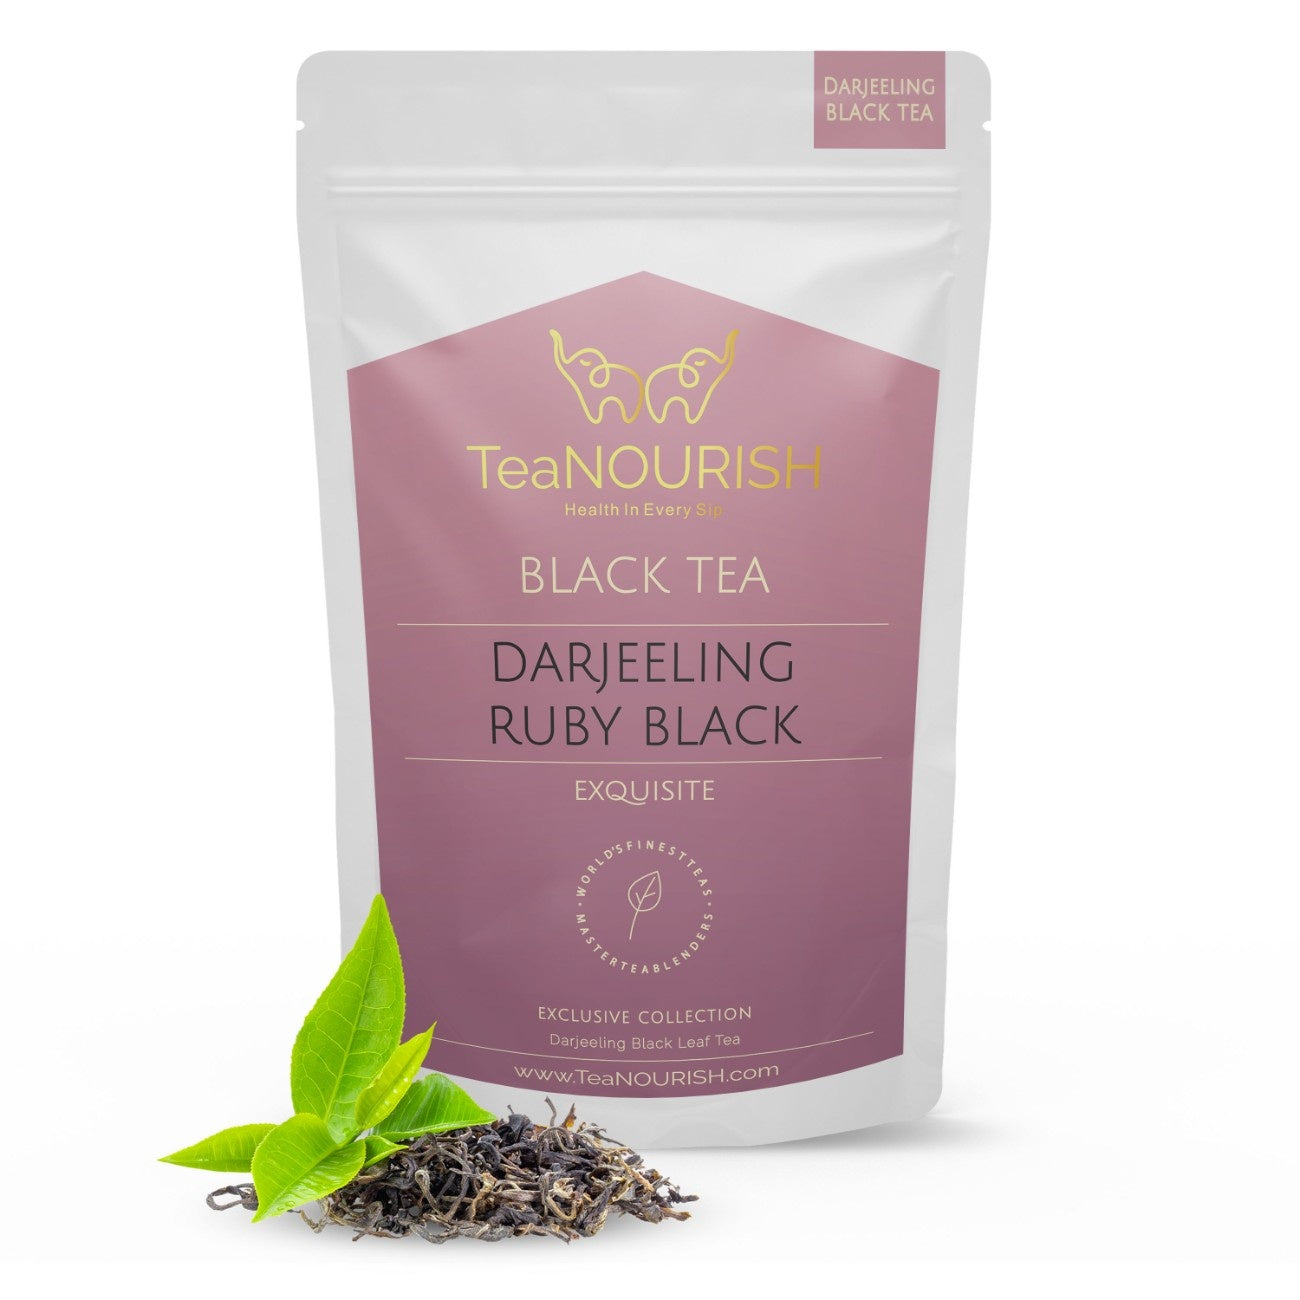 Darjeeling Ruby Black Tea